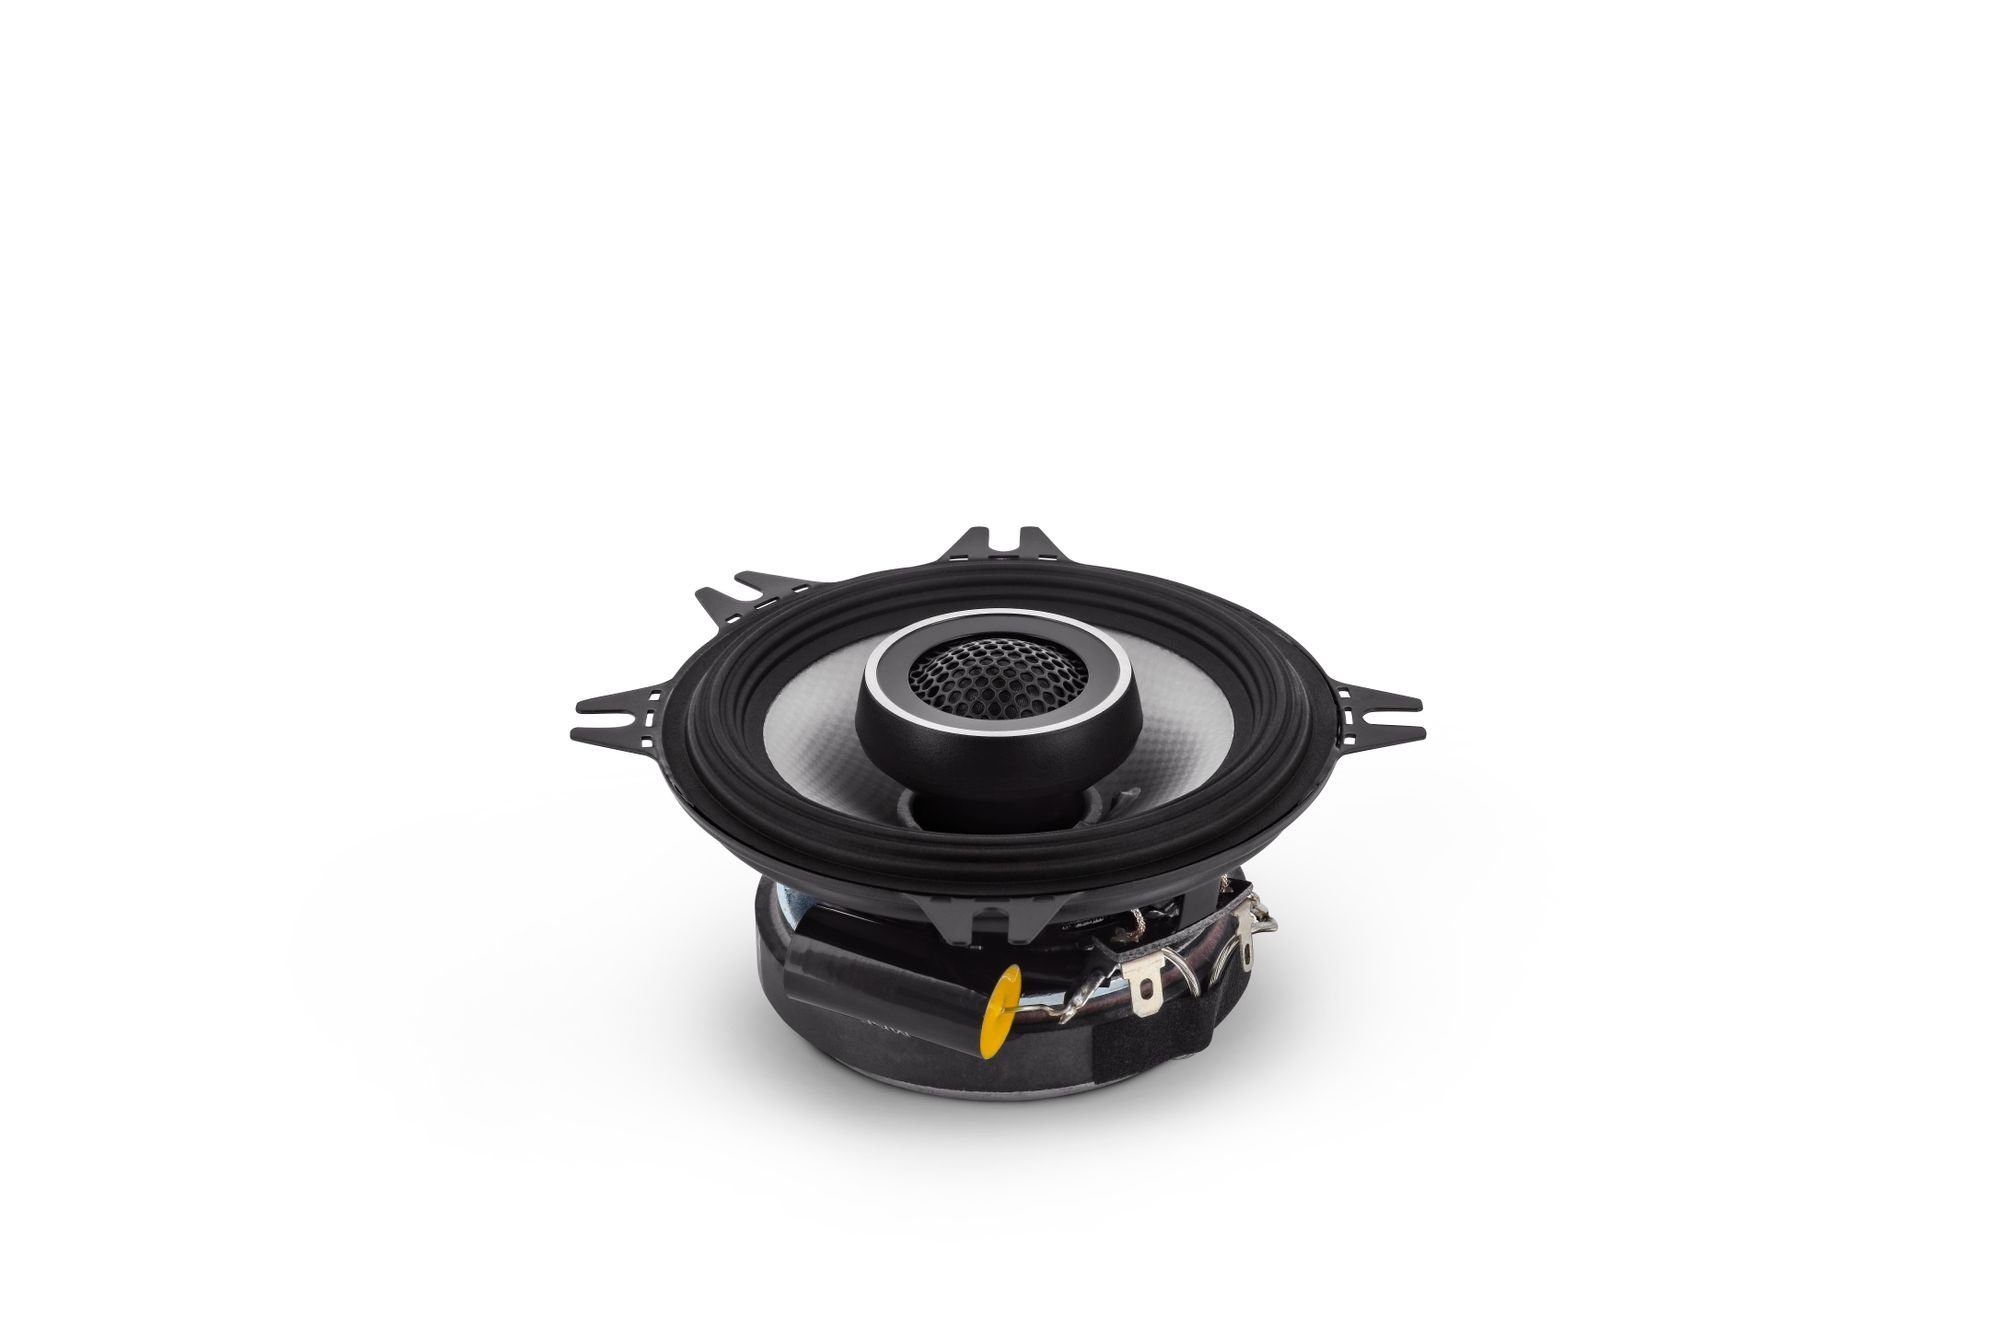 AXTON Car-Hifi Systeme für Ihr Auto  AXTON ATX130S: 13 cm Auto-Lautsprecher,  Koaxial System